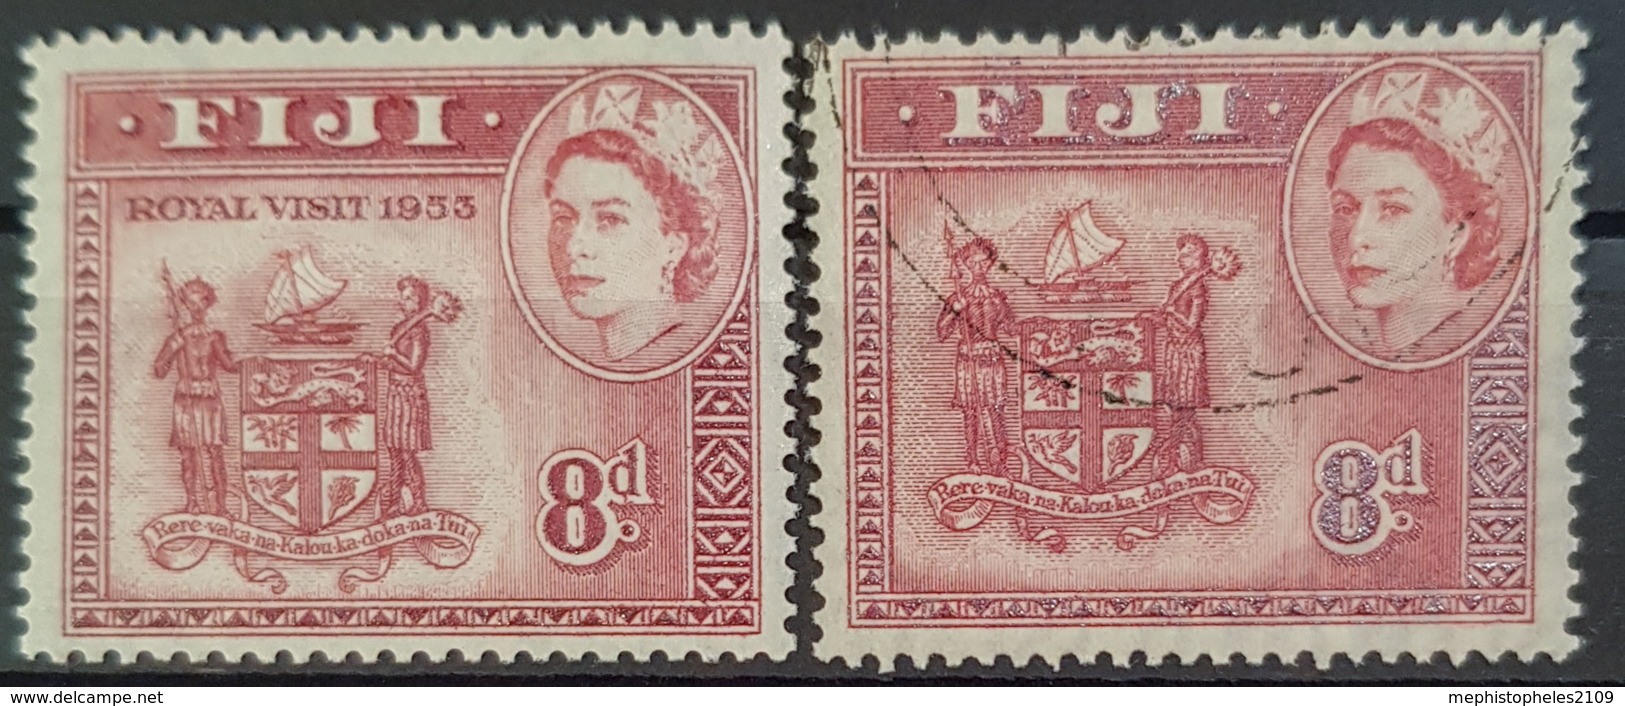 FIJI 1953 - MNH And Canceled - Sc#146 - Royal Visit 1953 - Fiji (...-1970)